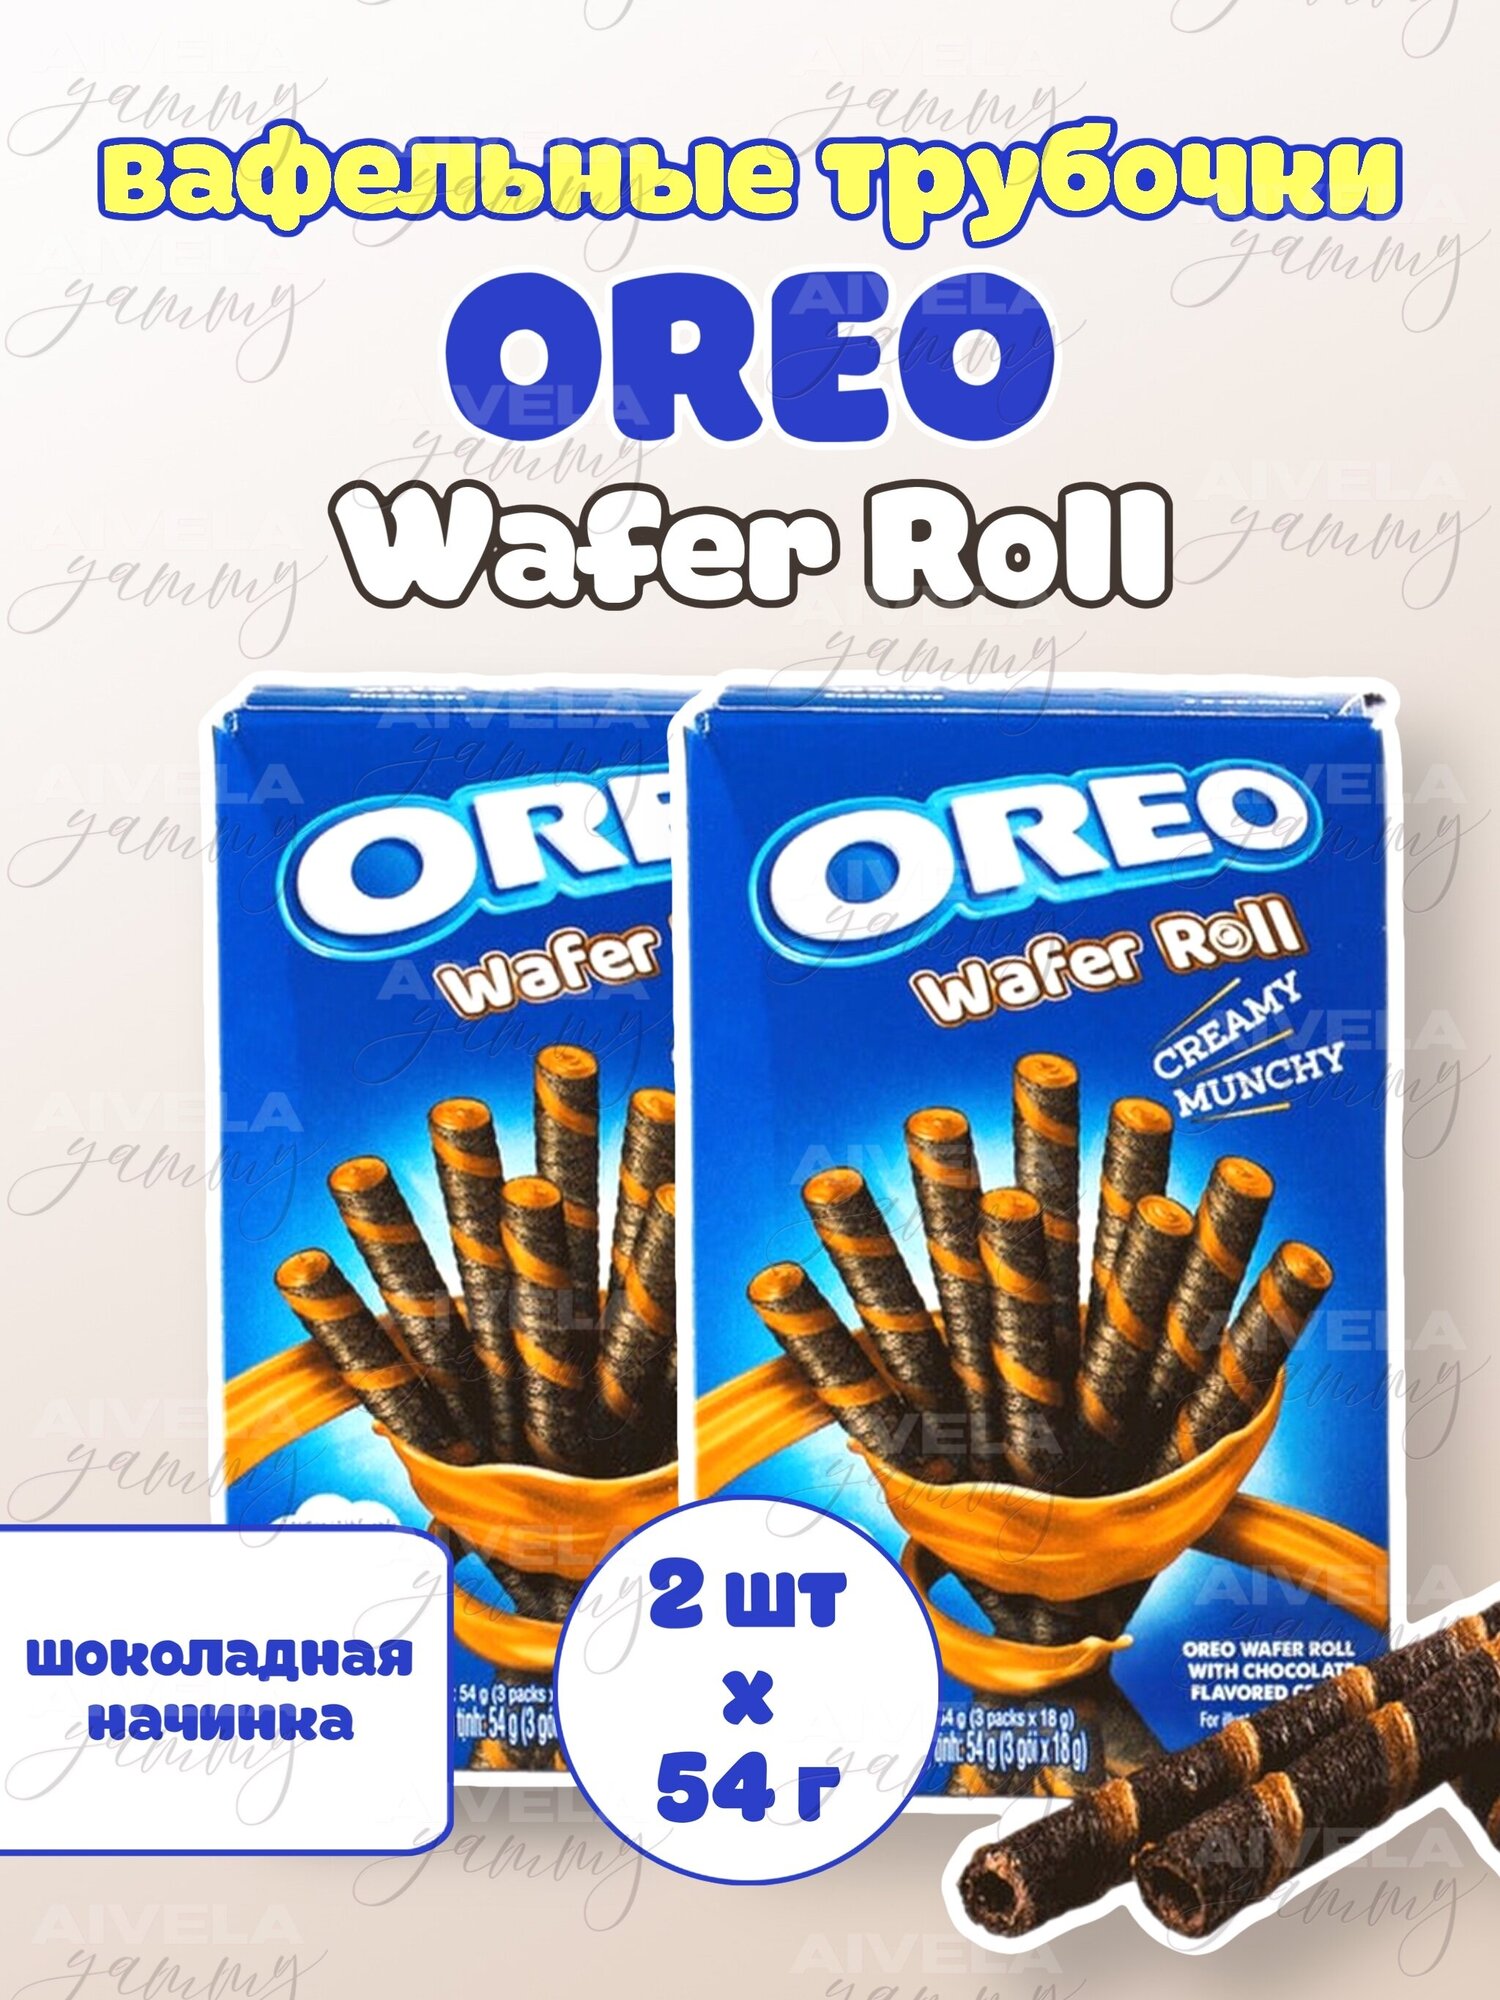 Вафельные трубочки-печенье с шоколадом Oreo Wafer Roll Chocolate (2 шт. по 54 гр.)